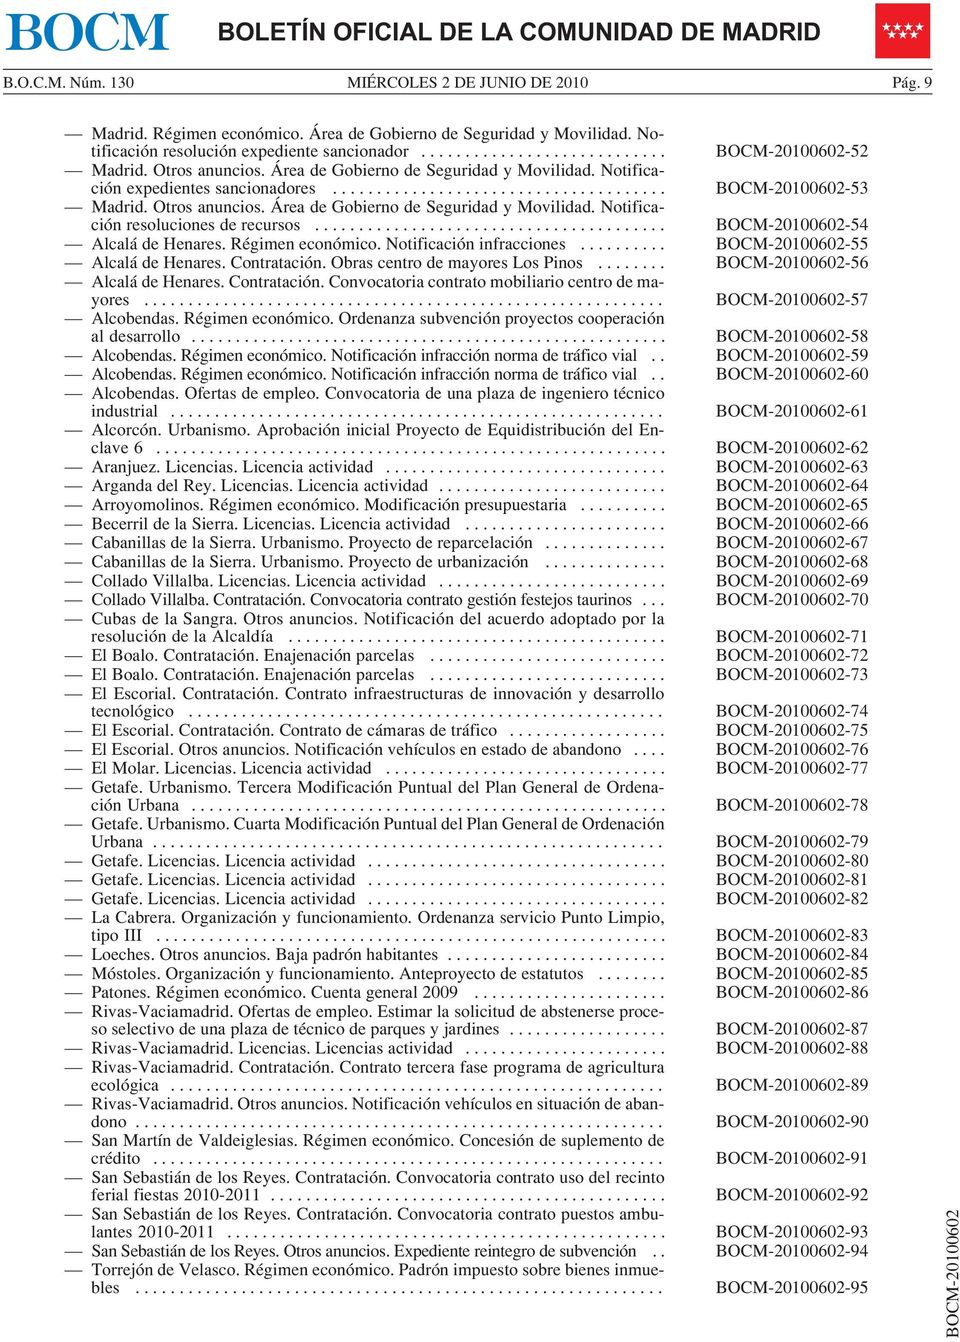 Notificaciónresolucionesderecursos... BOCM-20100602-54 Alcalá de Henares. Régimen económico. Notificación infracciones... BOCM-20100602-55 Alcalá de Henares. Contratación.